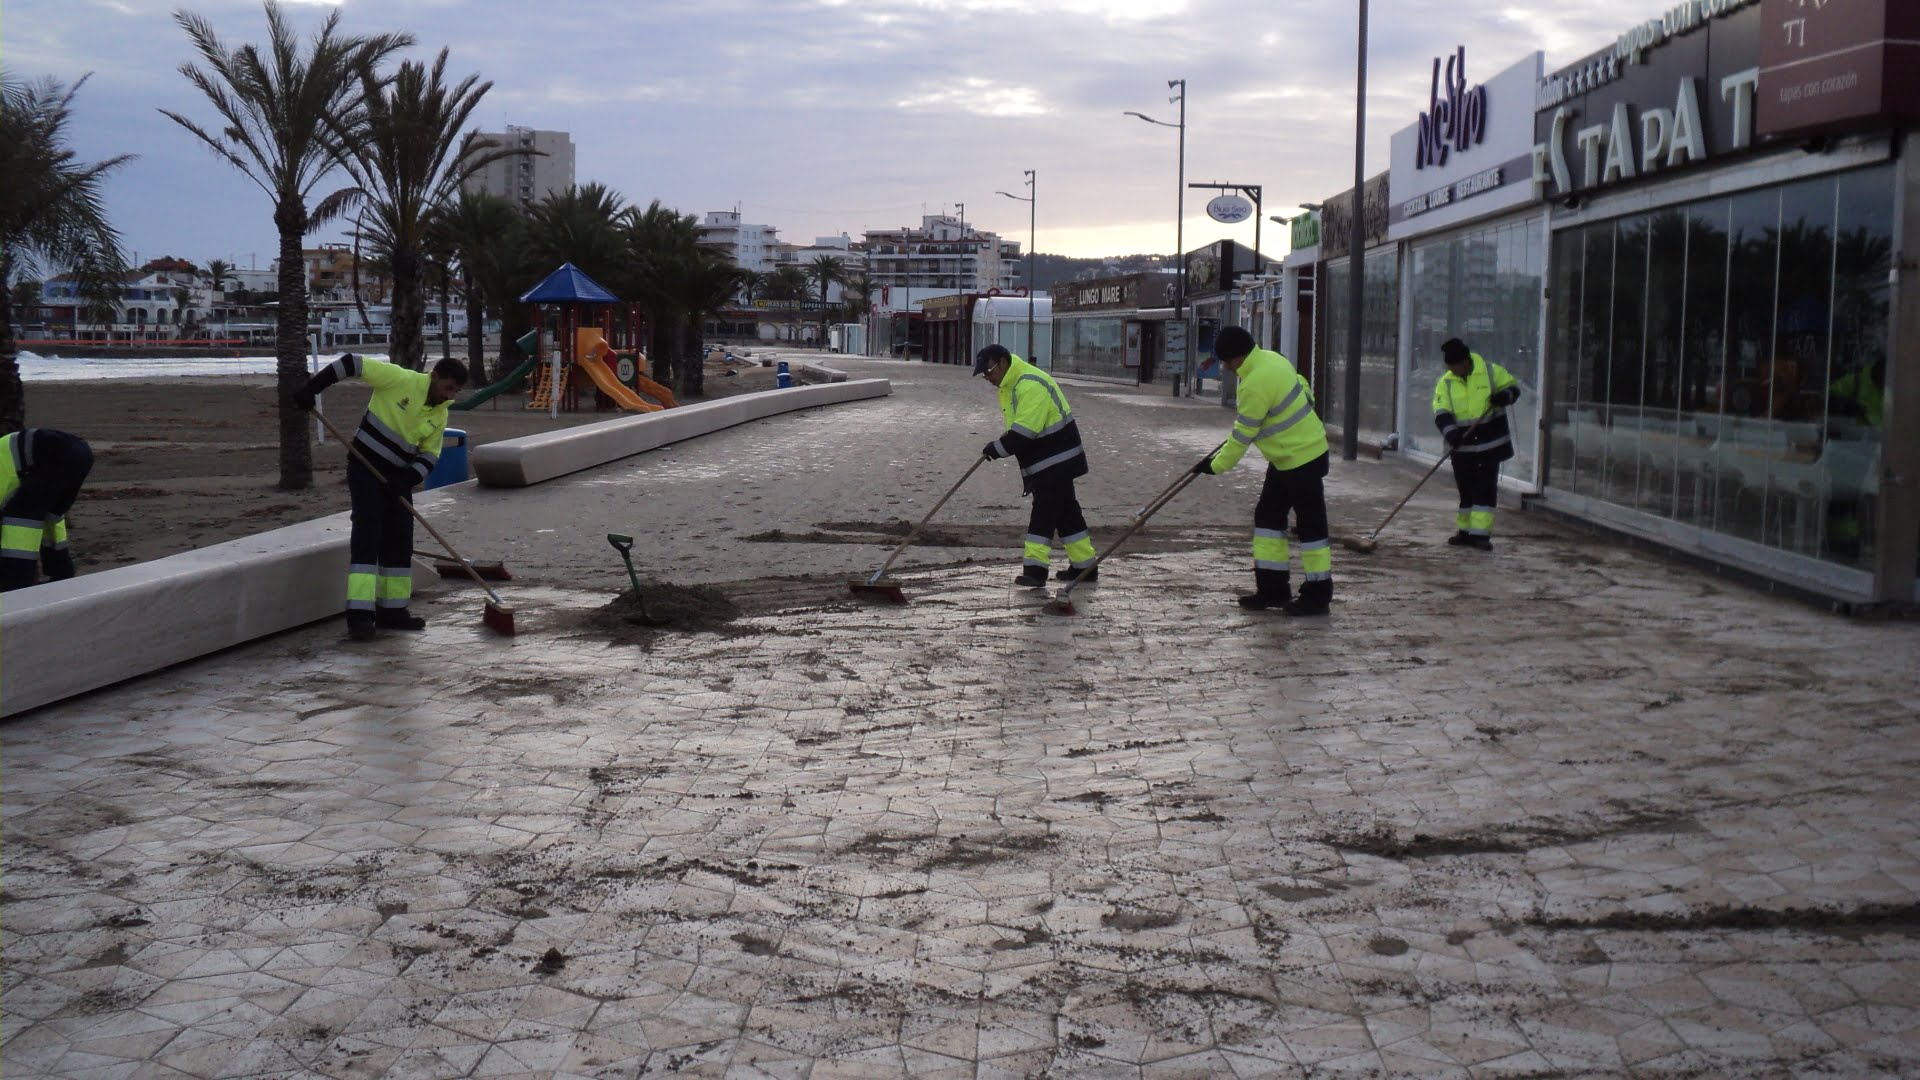 Los trabajadores de la empresa municipal de limpieza de Jávea han vuelto el paseo David Ferrer a la normalidad después del temporal